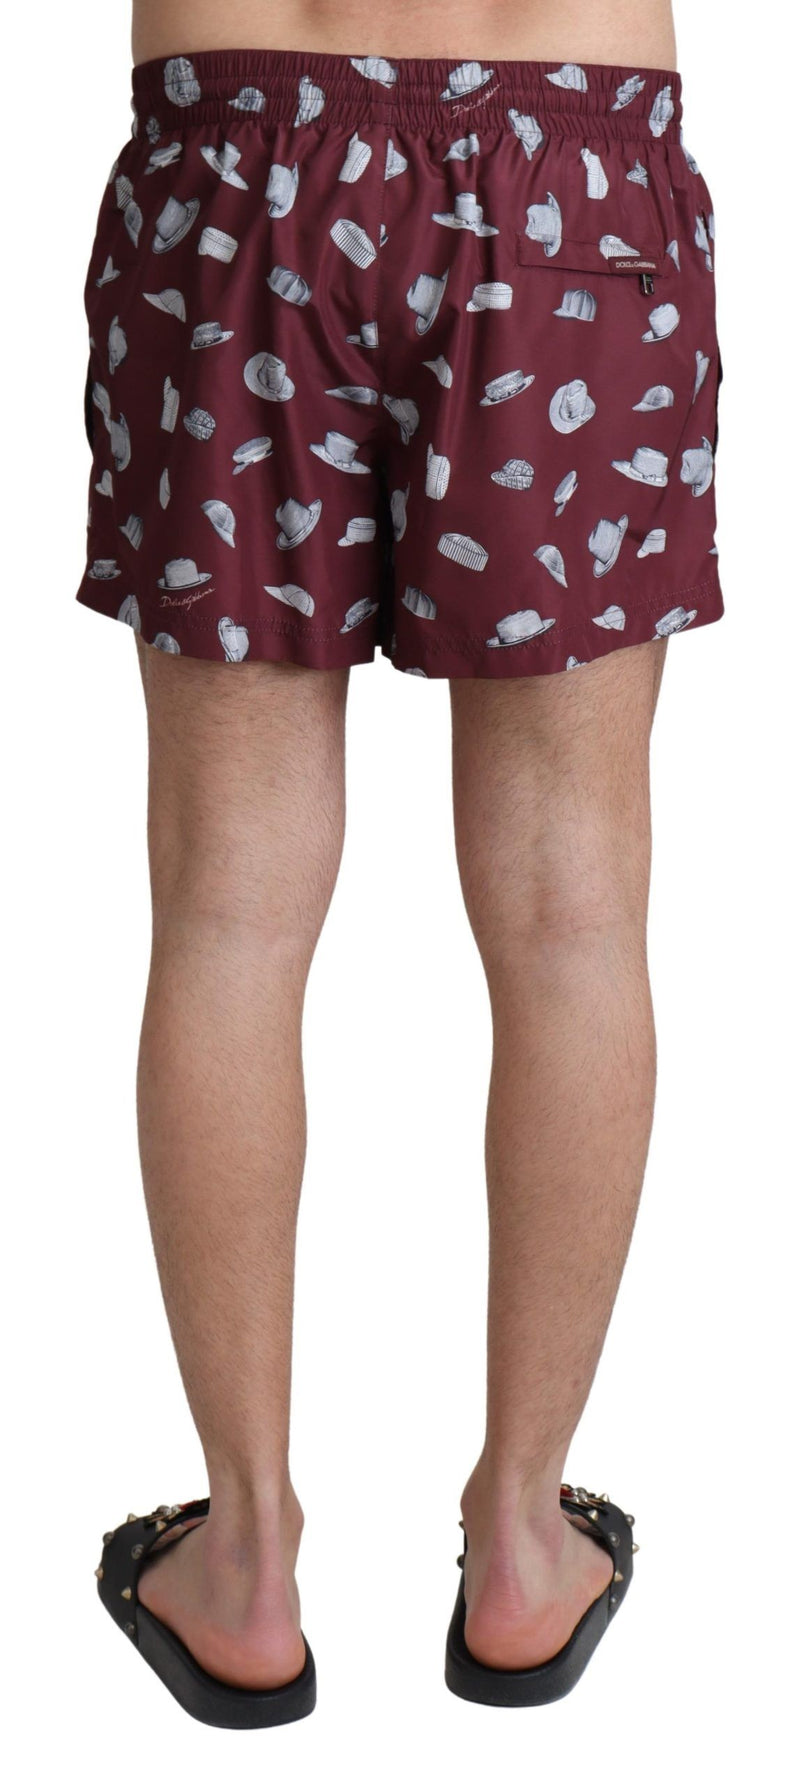 Dolce & Gabbana Maroon Hats Print Beachwear Shorts Men's Swimwear